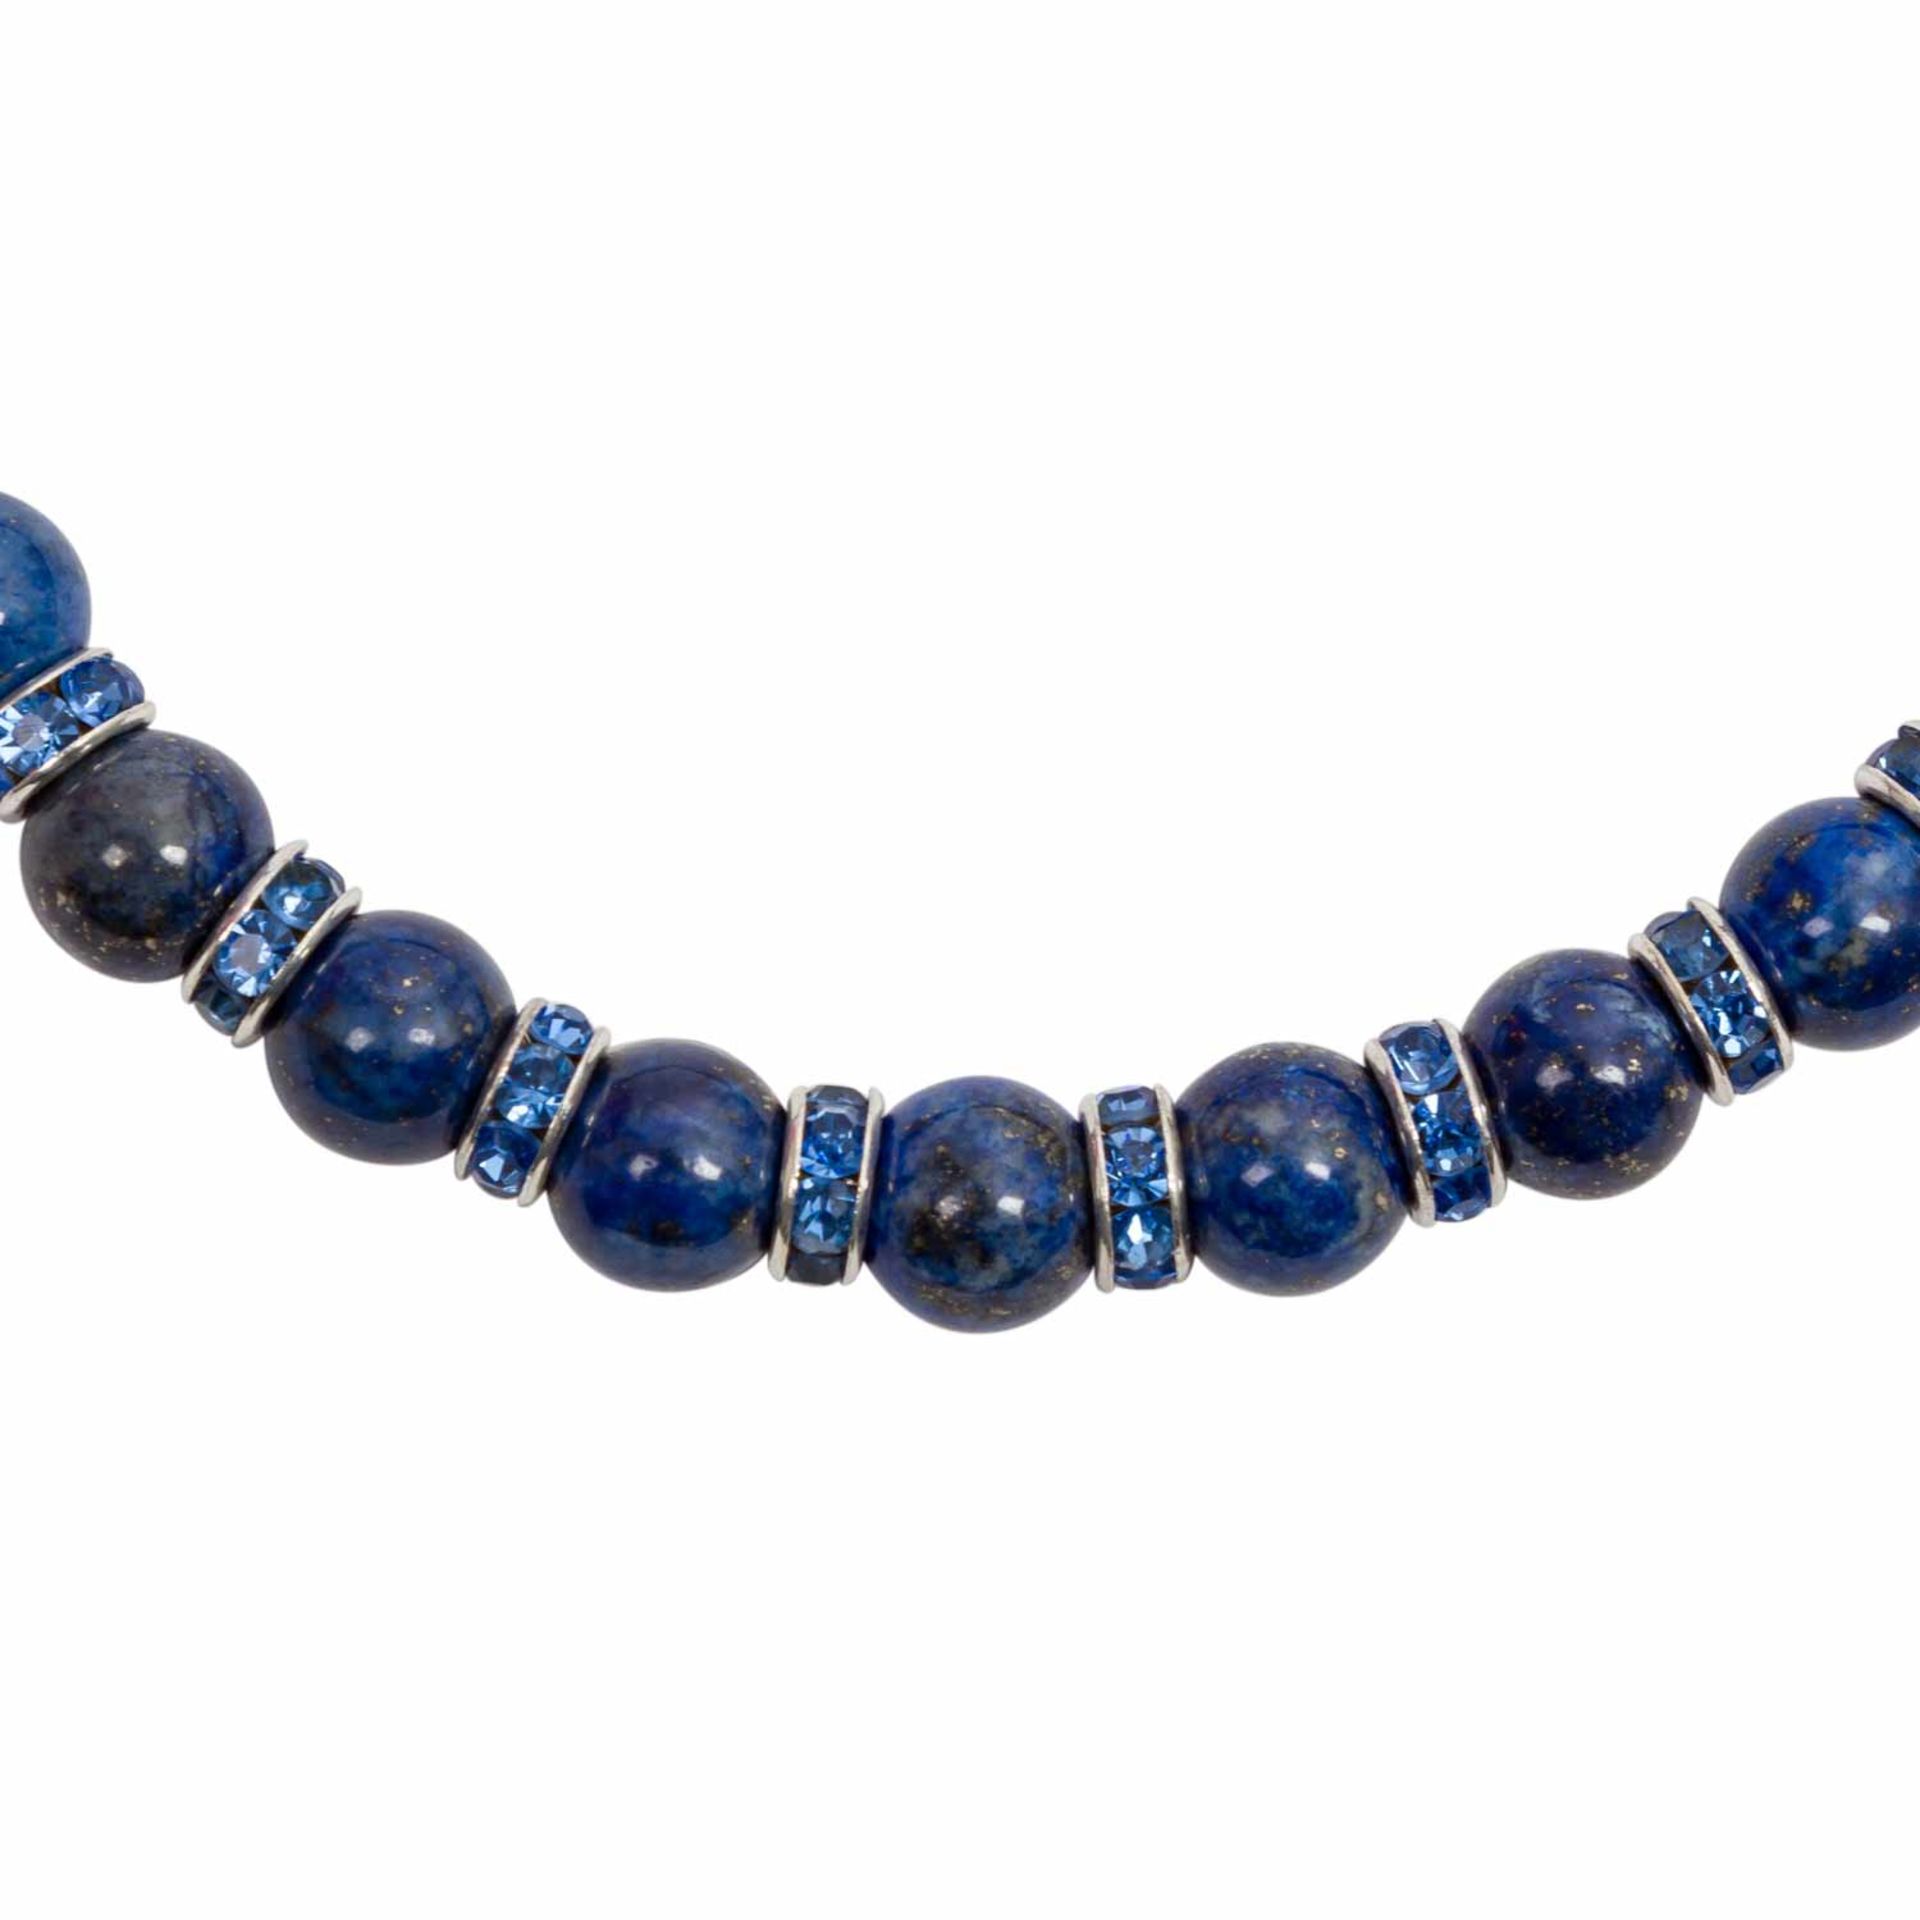 5 Steinketten,dabei 1 x mit Lapis Lazuli, leichte Gebrauchsspuren.5 stone chai - Image 5 of 6